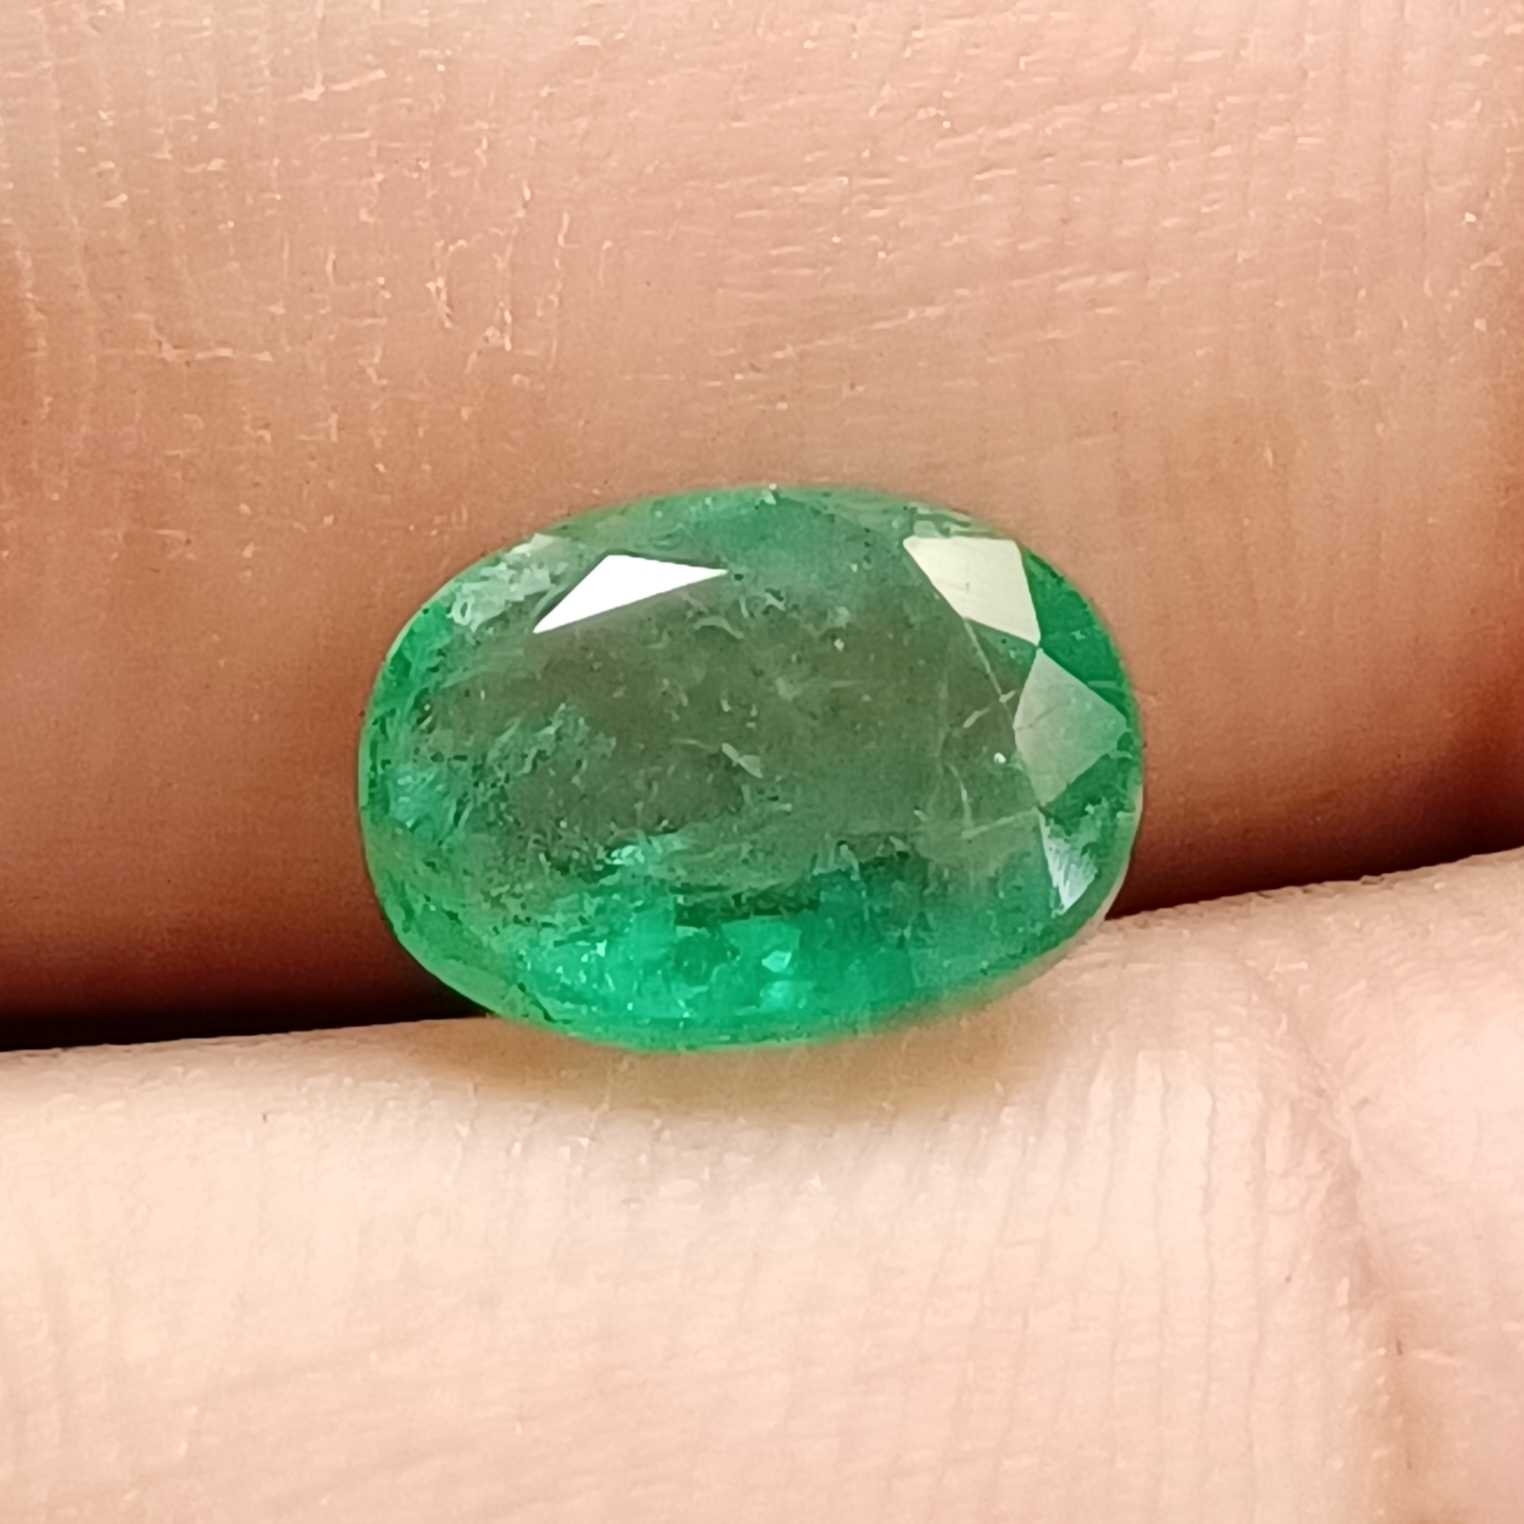 2.56 medium deep green oval cut emerald gemstone /